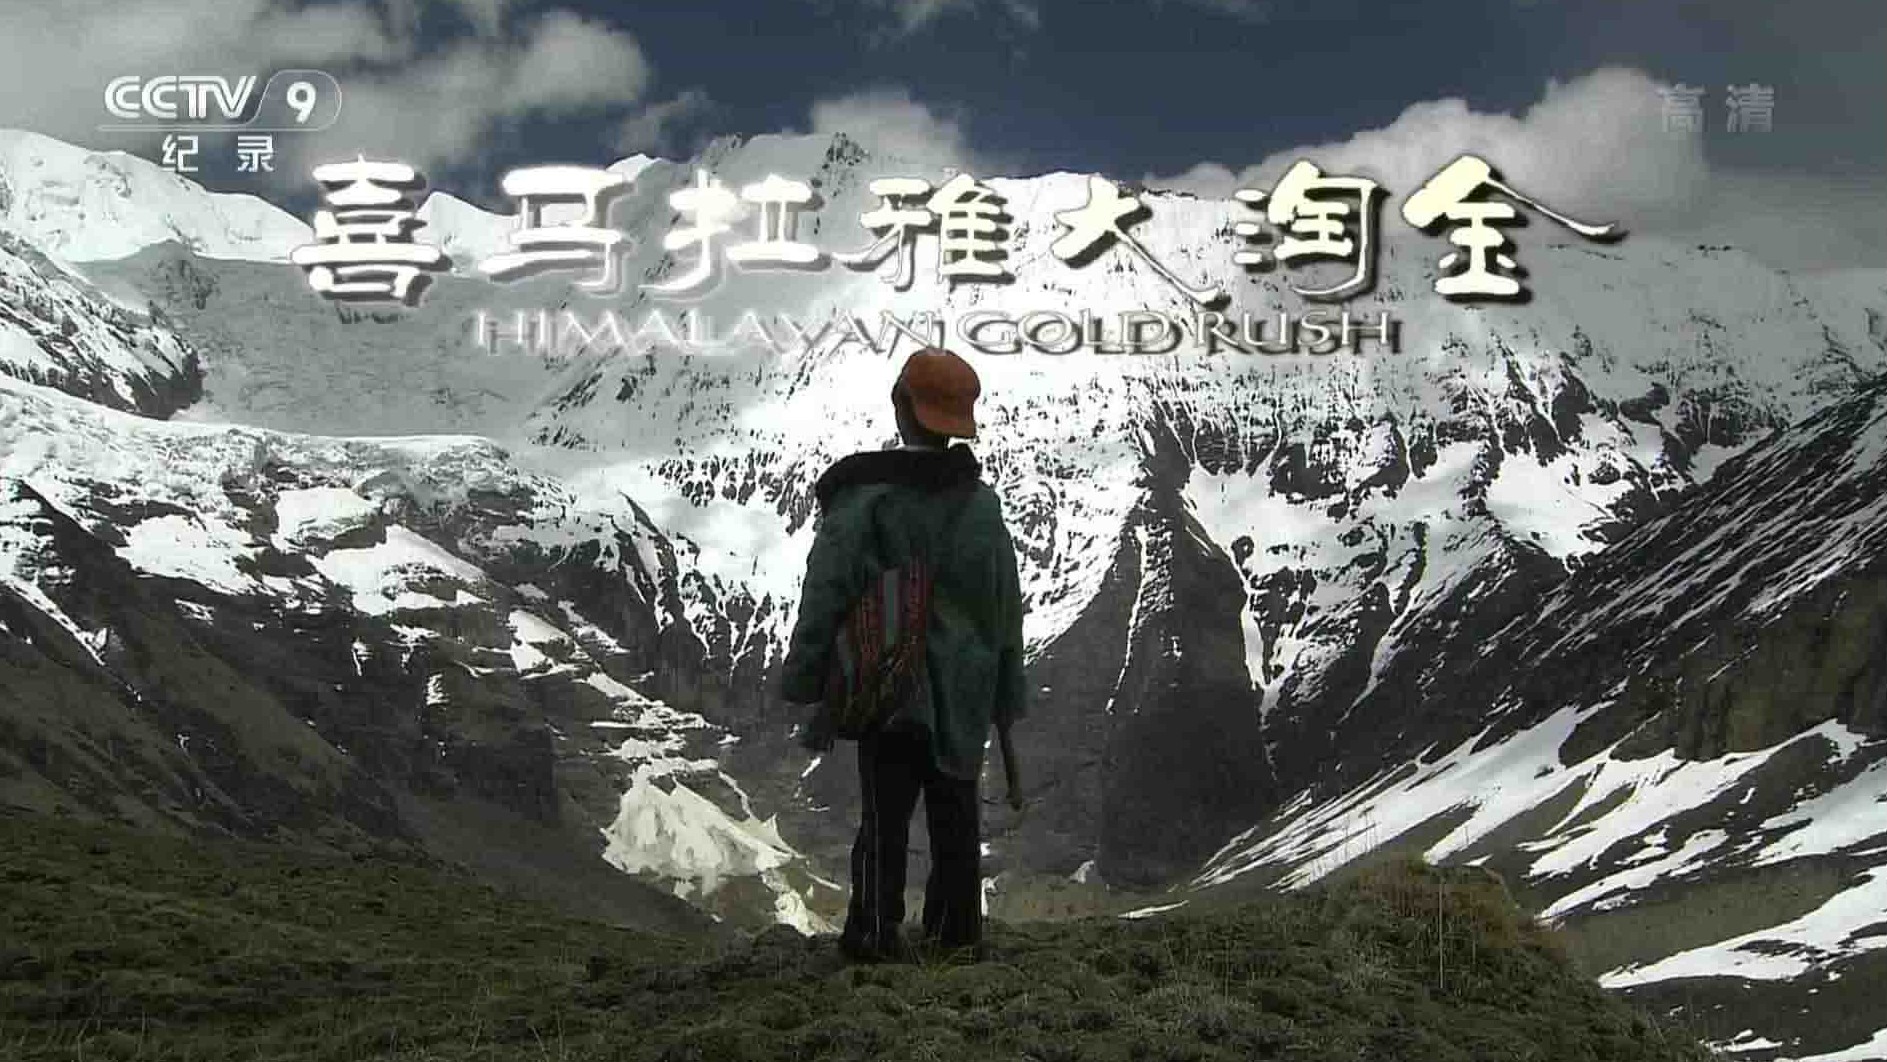 央视纪录片《喜马拉雅大淘金 Himalayan Gold Rush》全1集 国语中字 1080P高清网盘下载 